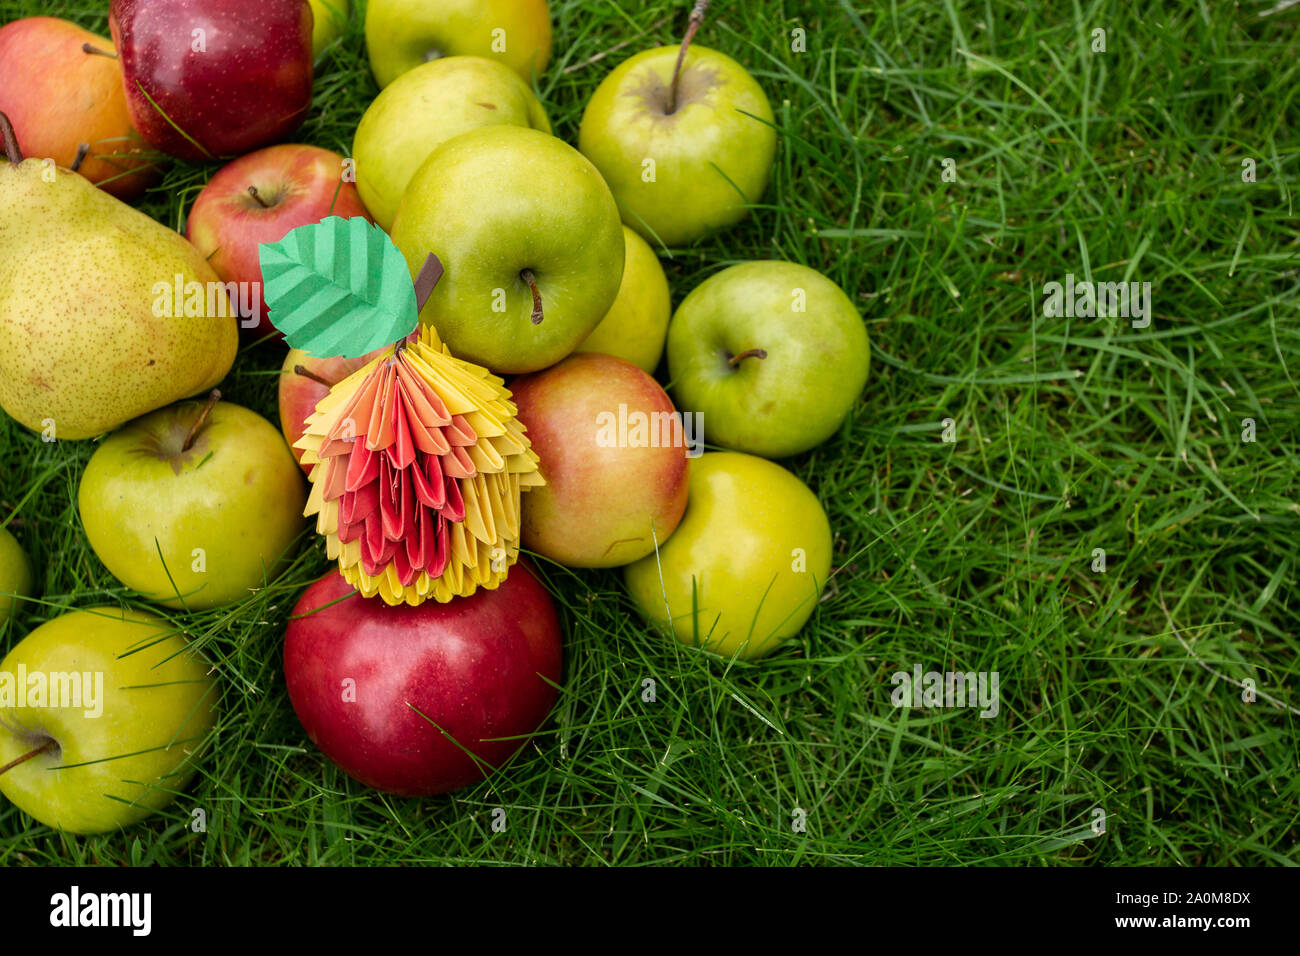 Apple harvest sfondo, cesto di vimini su erba verde, vista dall'alto papercraft origami Arte autunno card Foto Stock